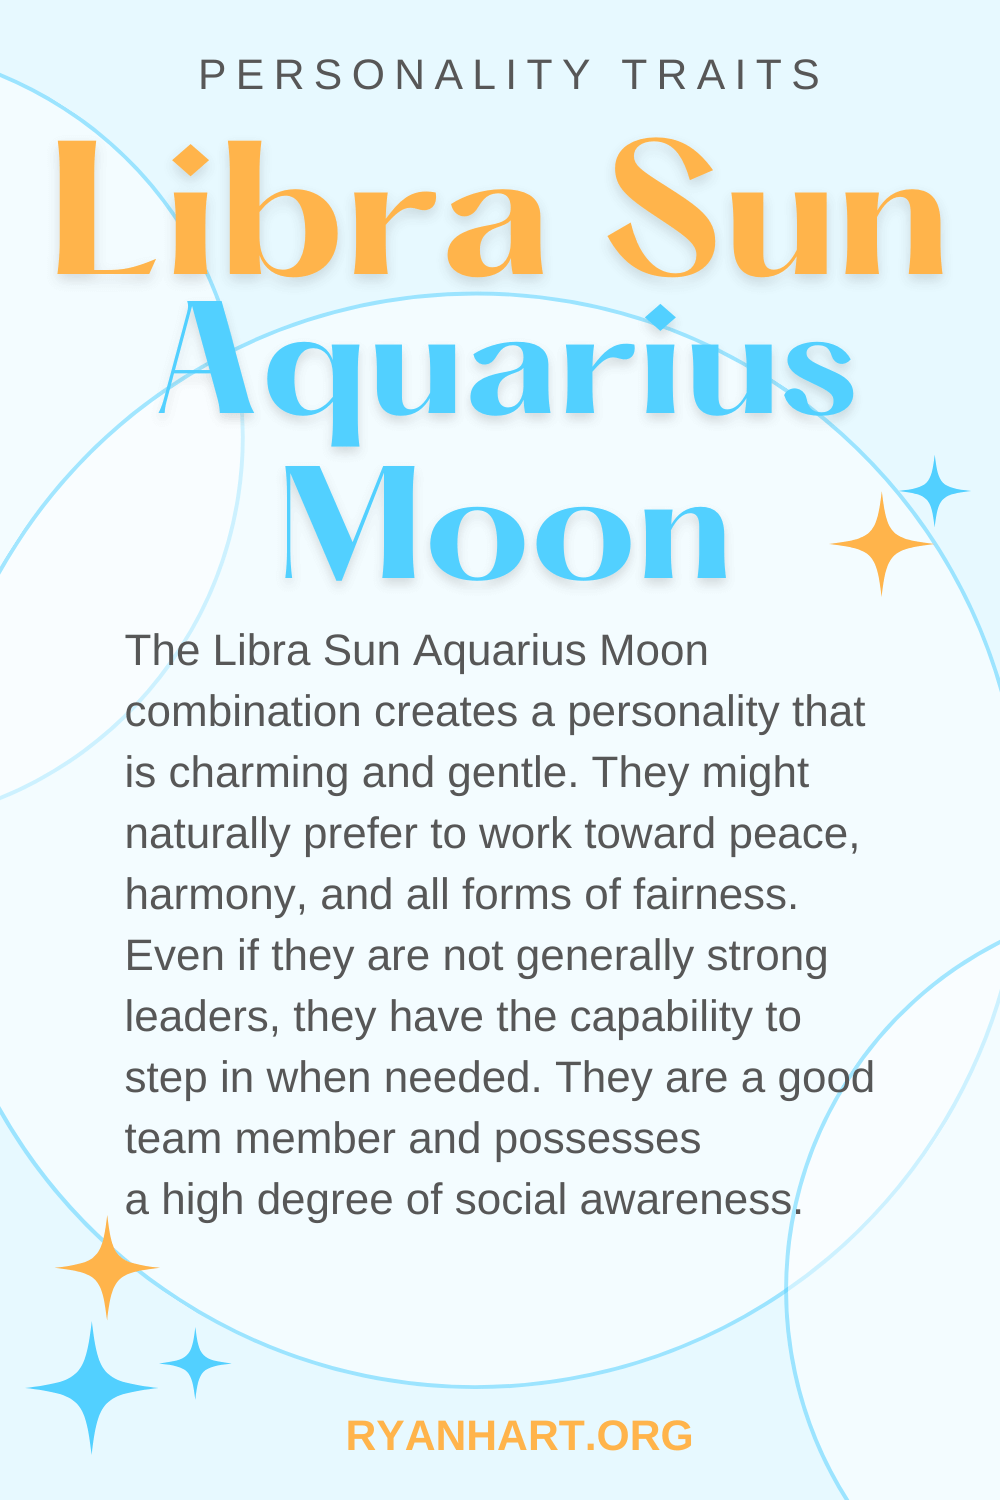  Ciri-ciri Personaliti Libra Sun Aquarius Moon